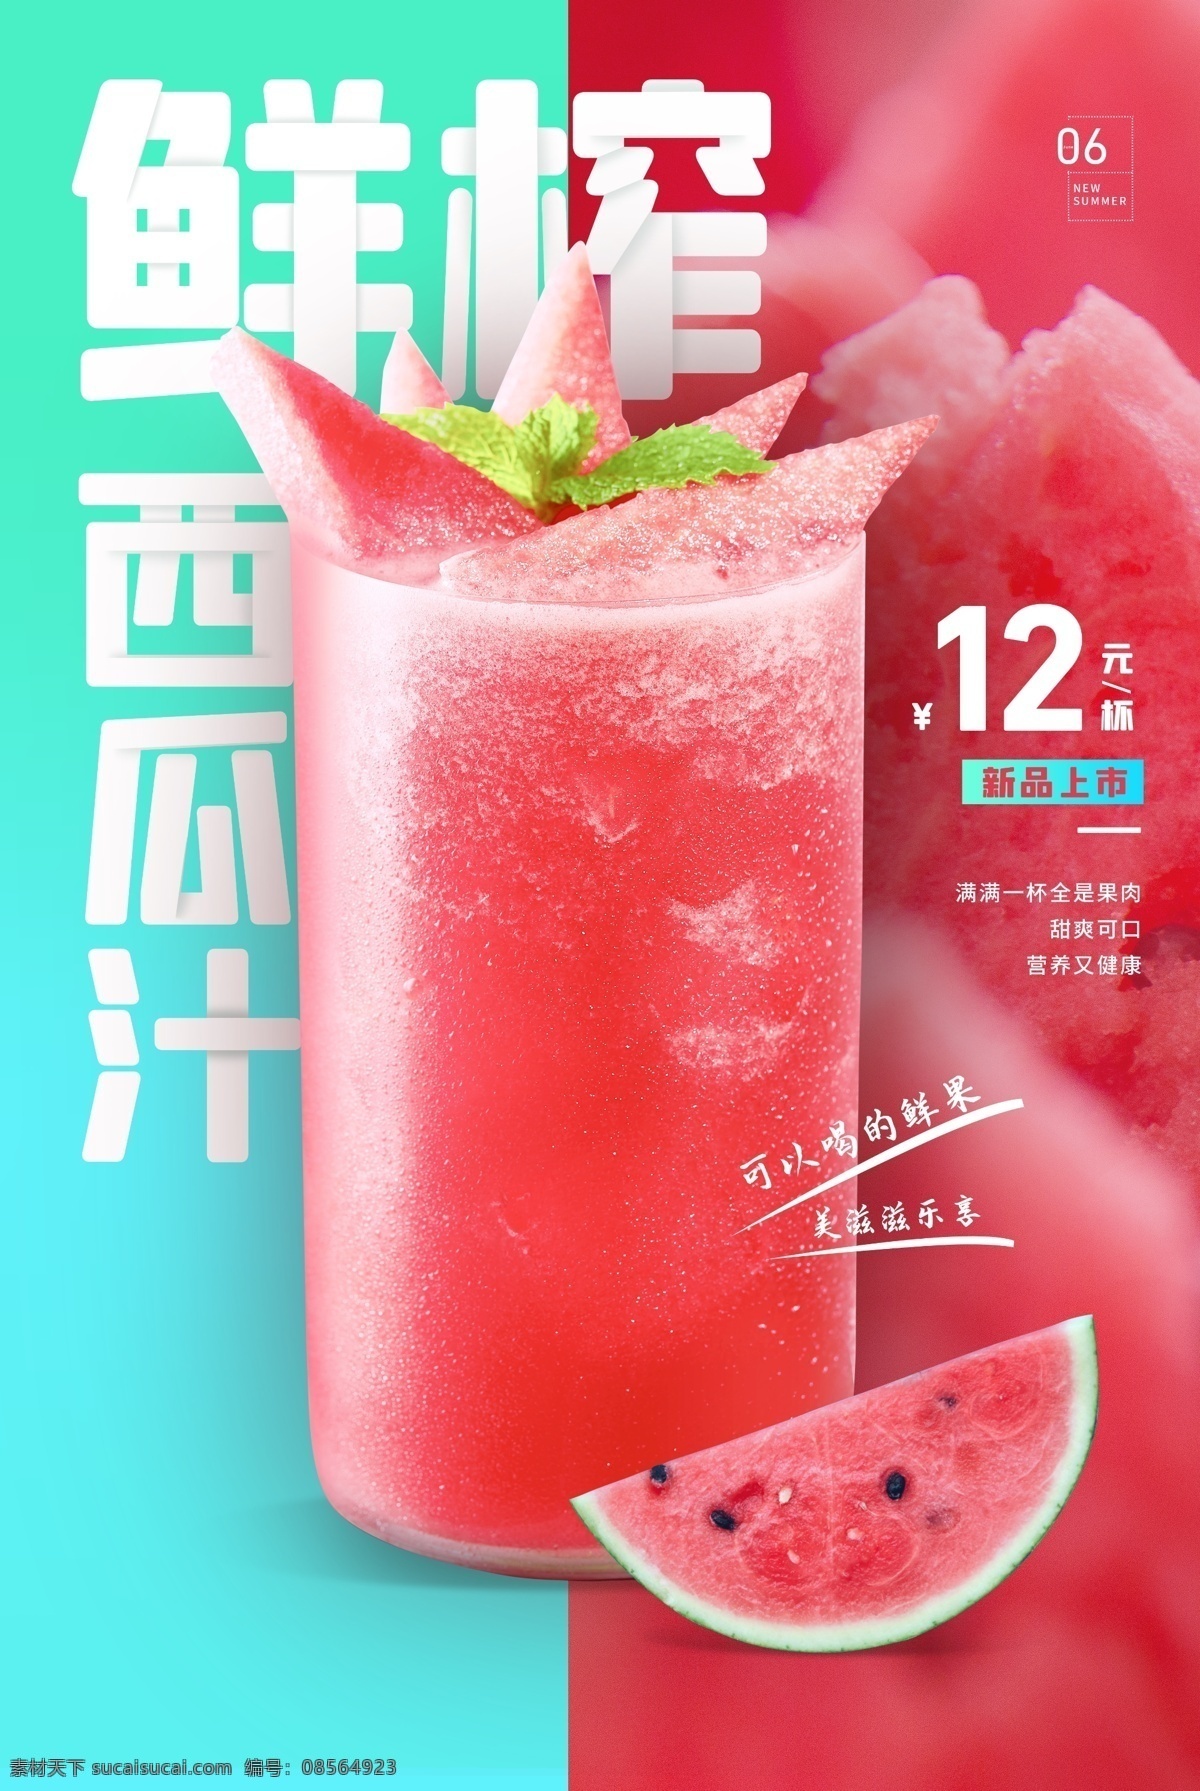 鲜榨 果汁 饮品 活动 宣传海报 素材图片 鲜榨果汁 宣传 海报 饮料 甜品 类